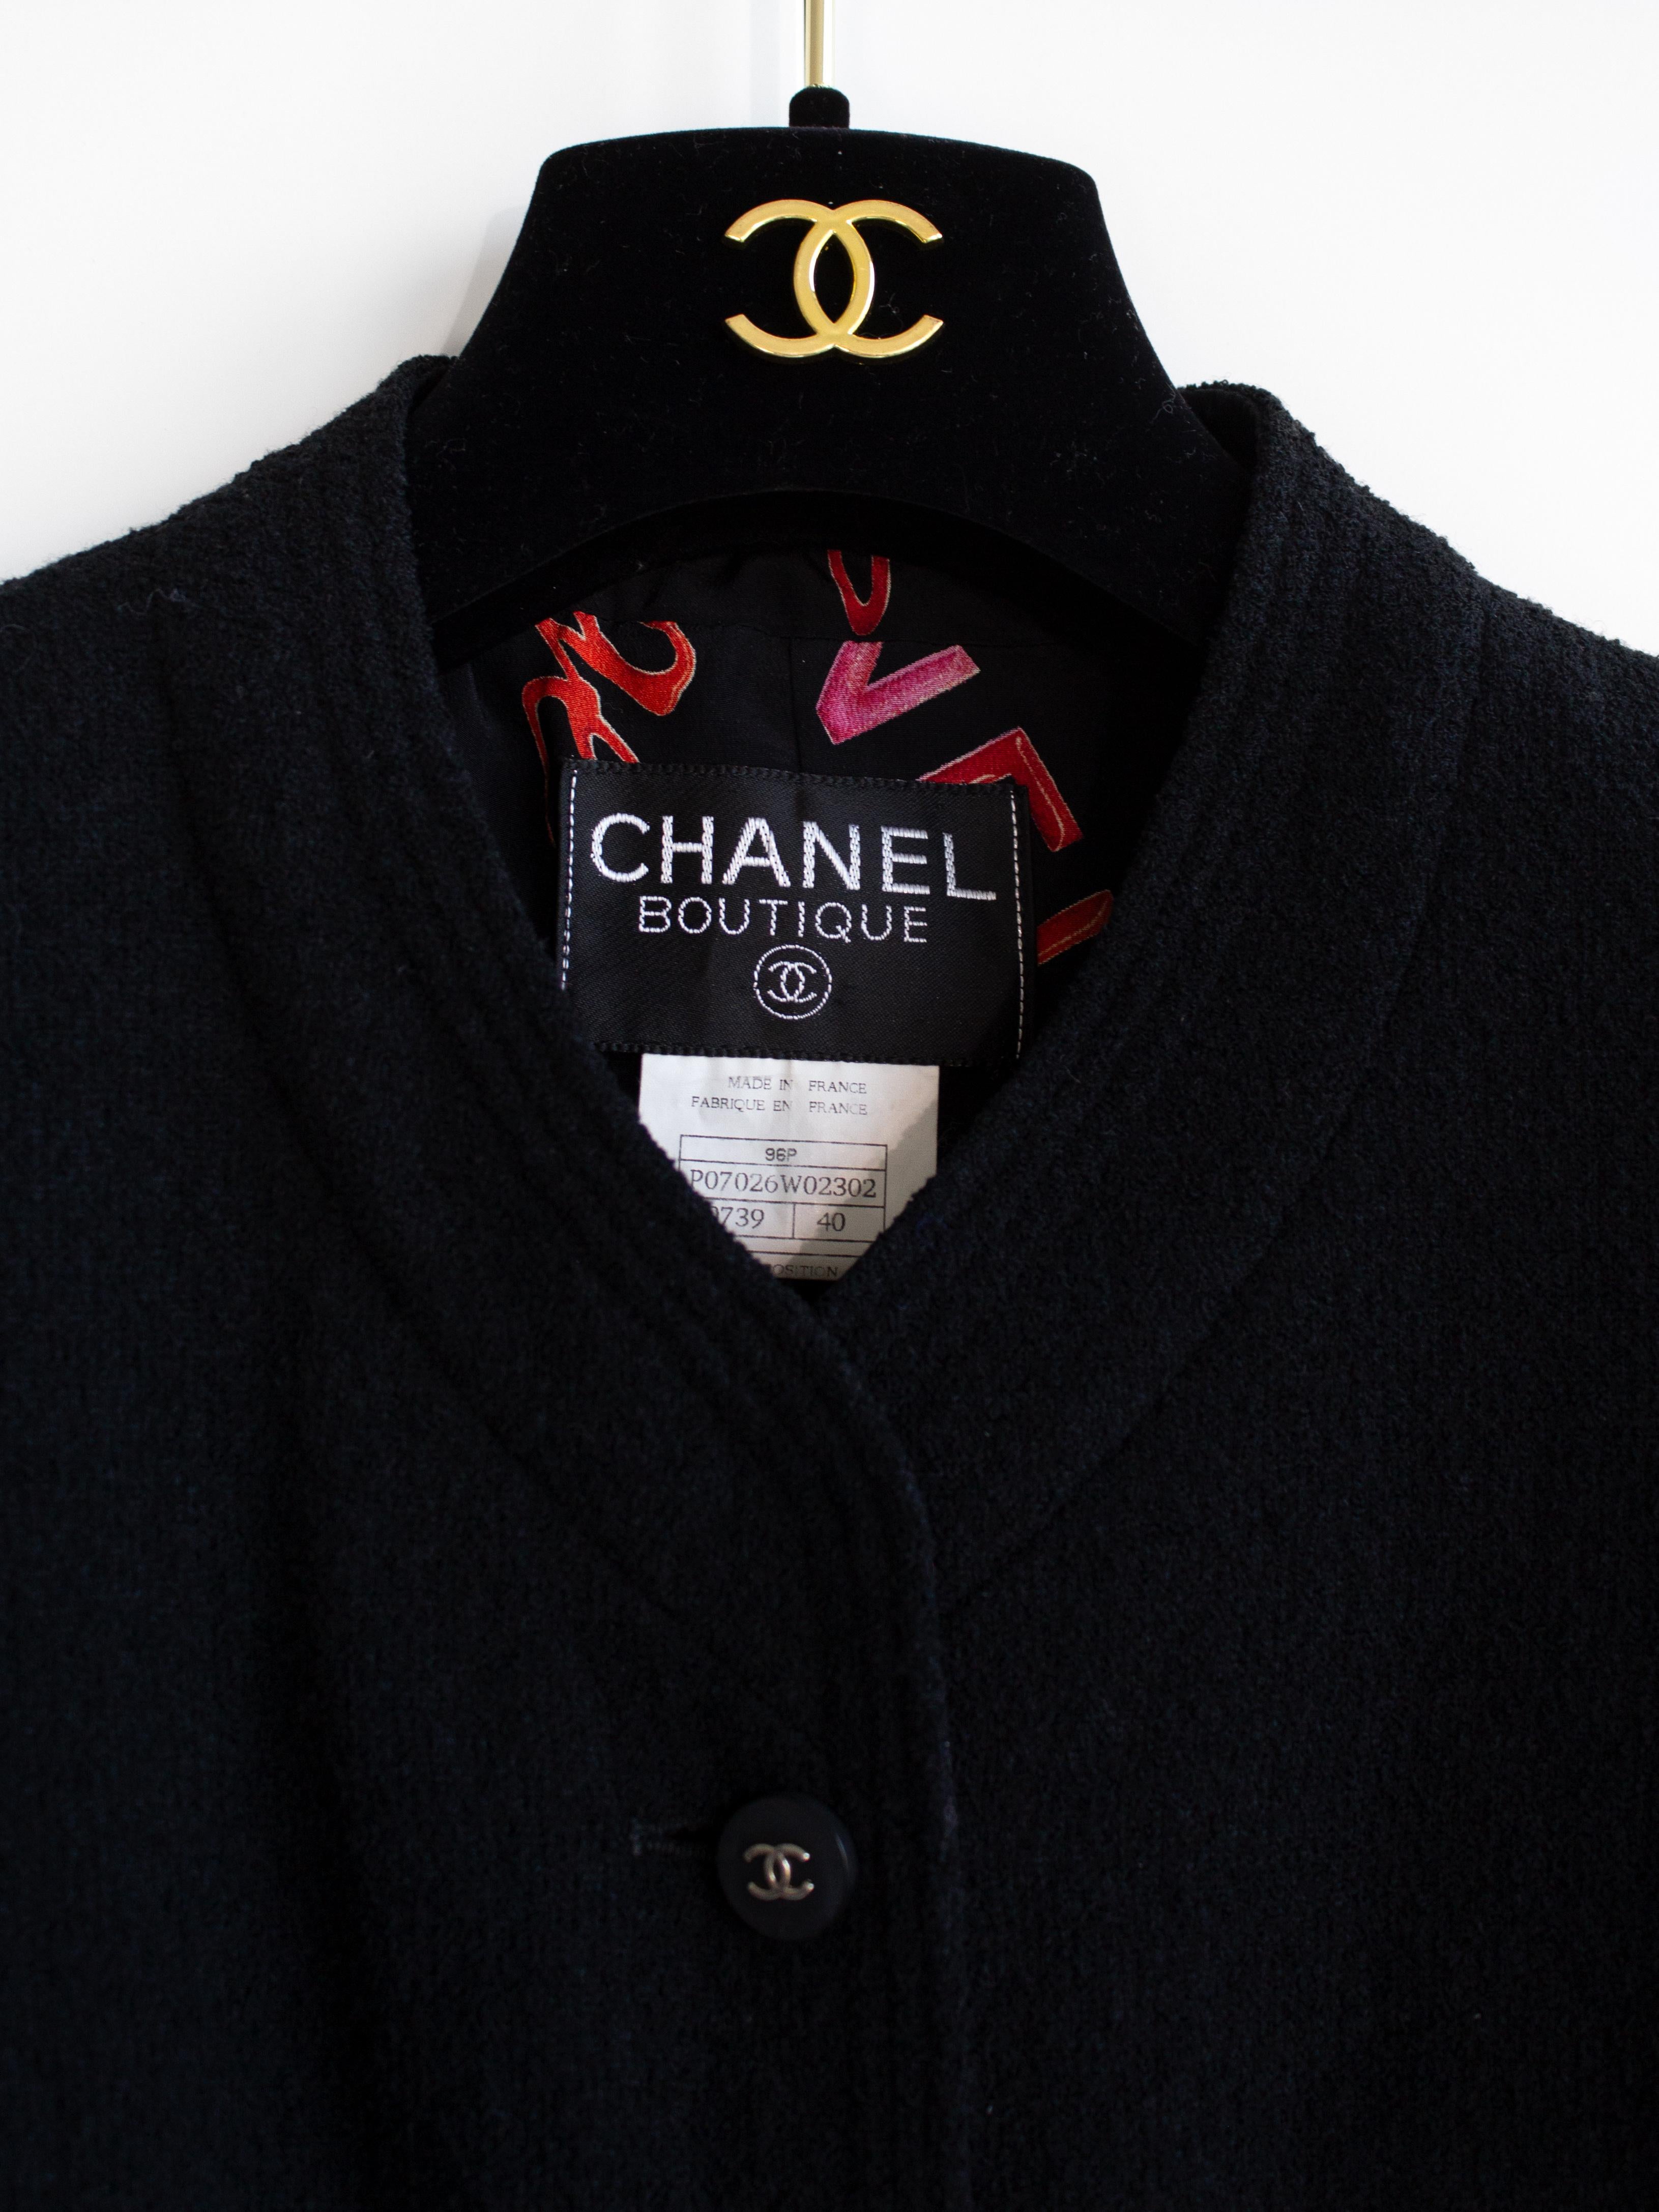 Chanel Vintage S/S 1996 Black Red Rouge Print Tweed 96P Jacket 2